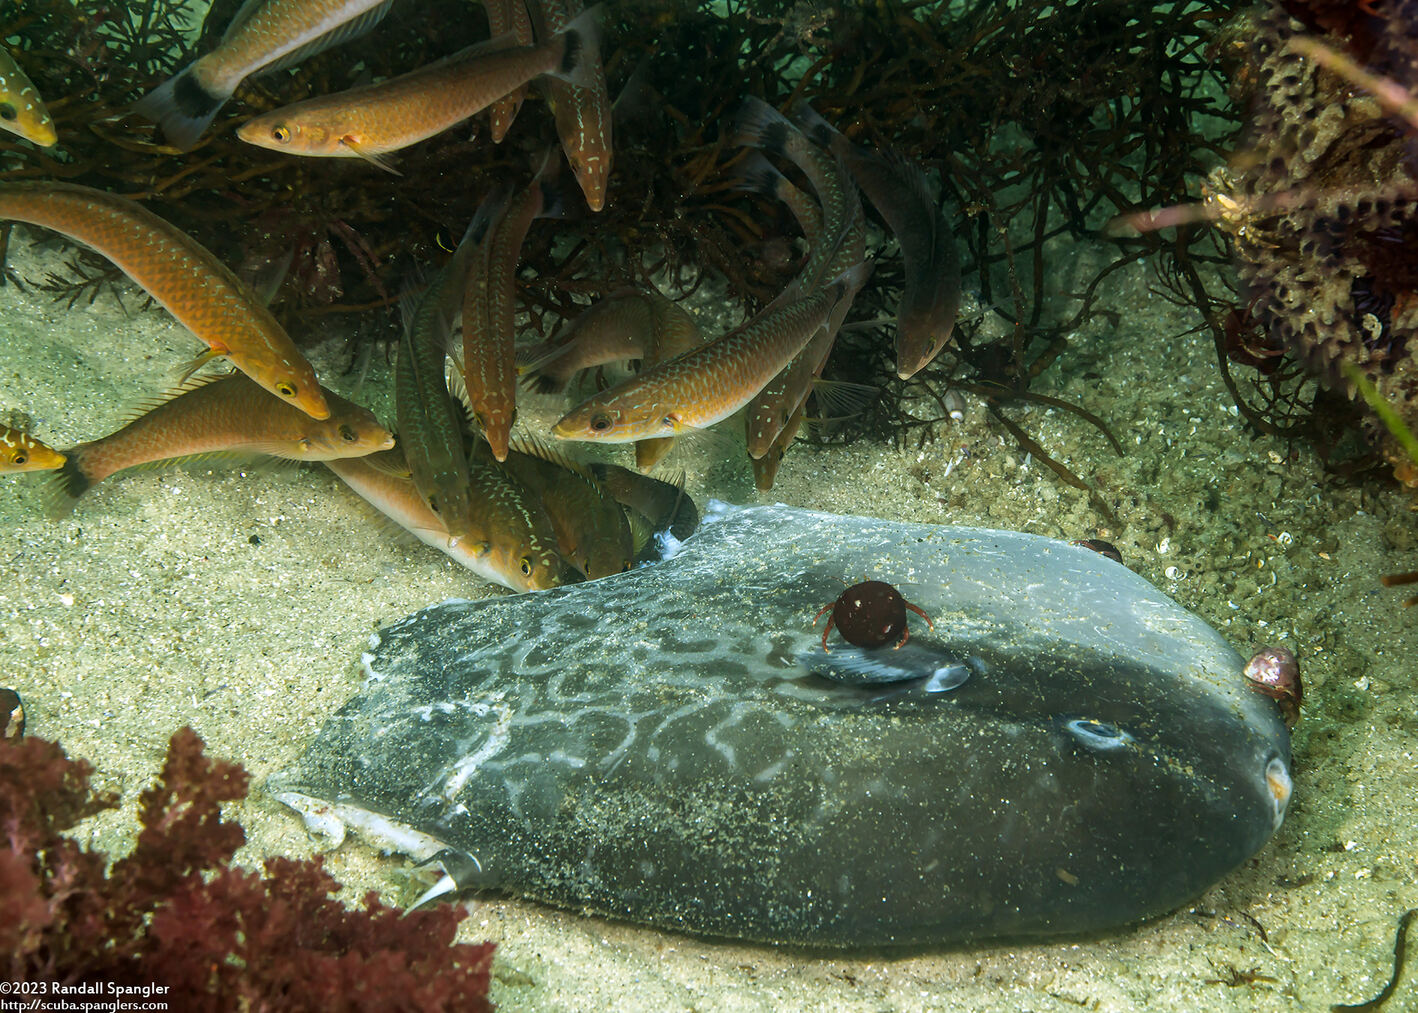 Mola mola (Ocean Sunfish); Senoritas eating a juvenile mola